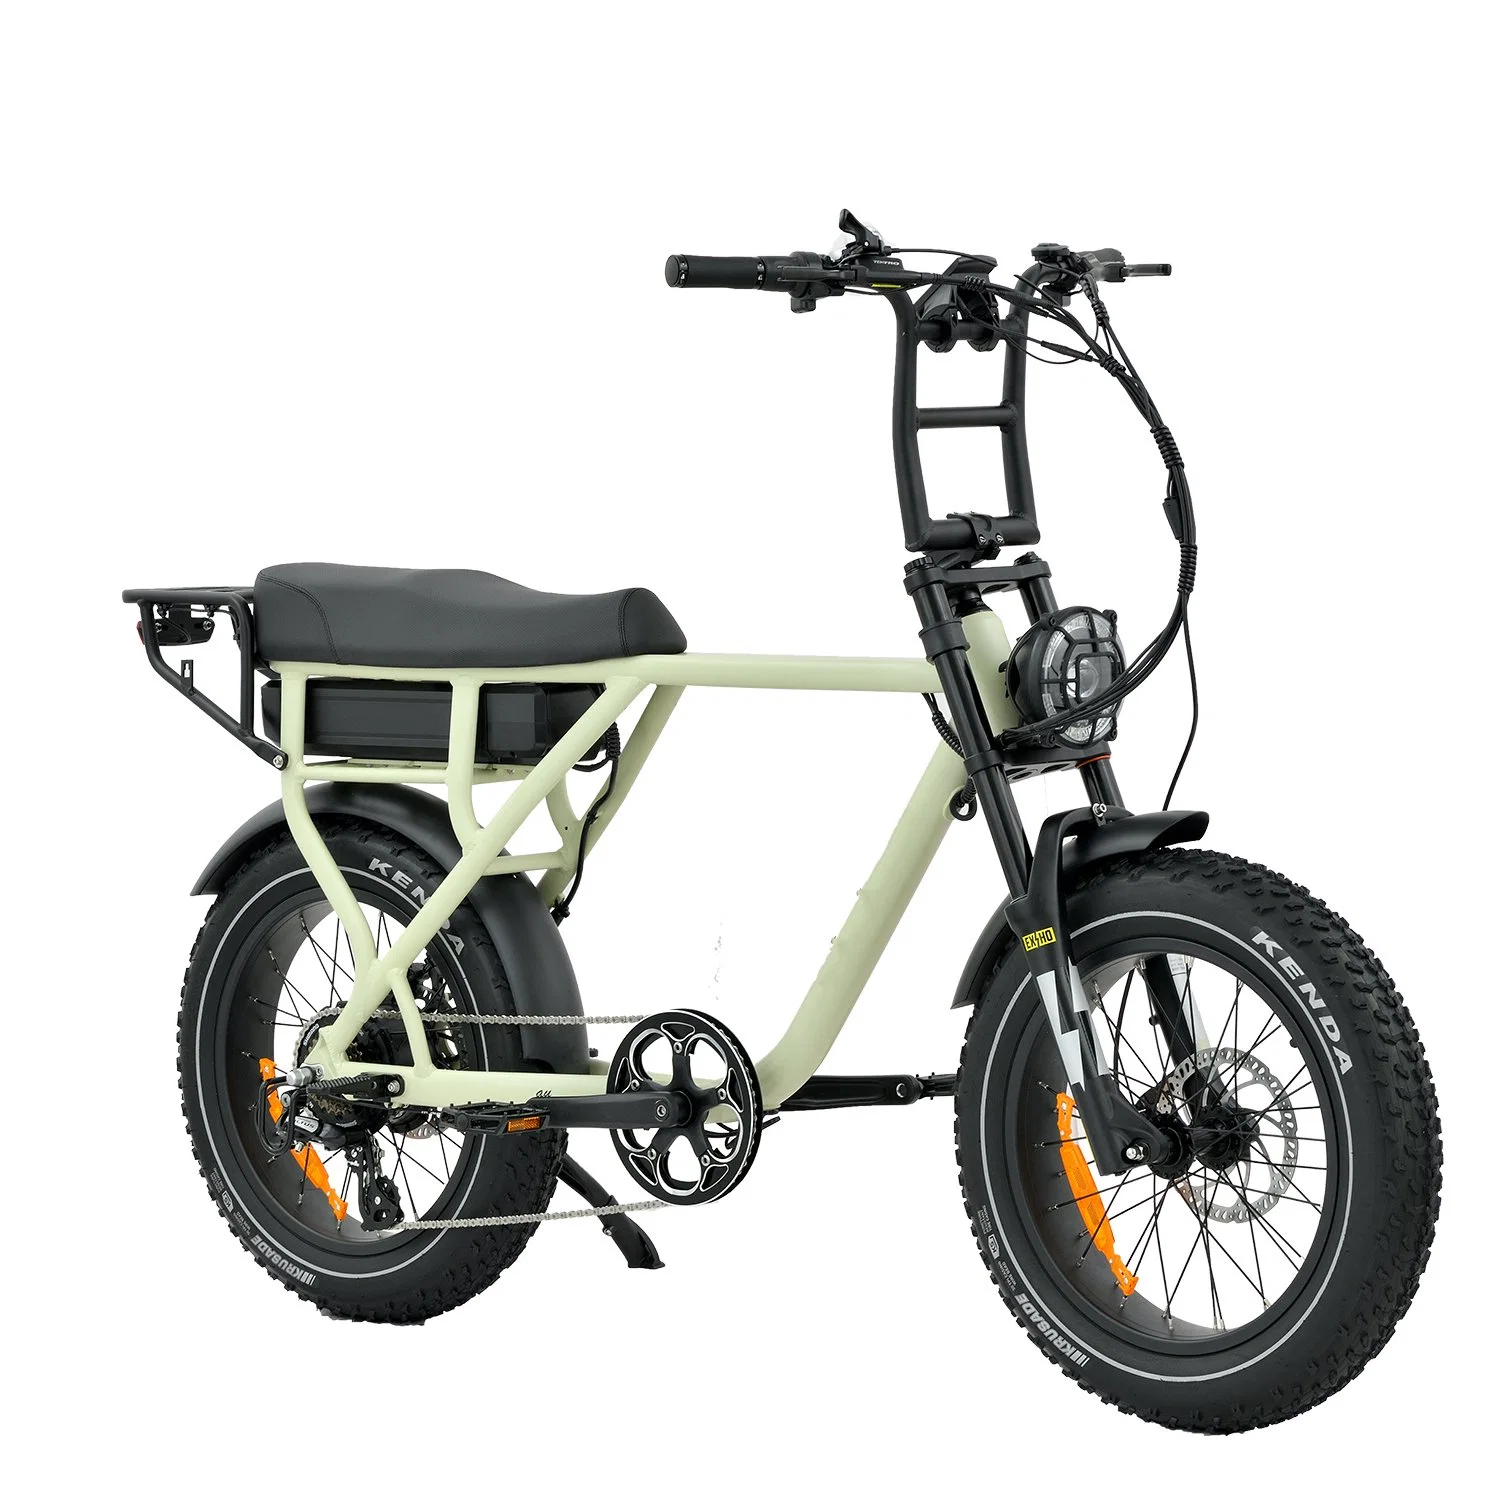 China Factory Sales 750W 1000W Hinterrad-Antrieb schnell Electric Mountain Bike Surron Retro Fat Ebike